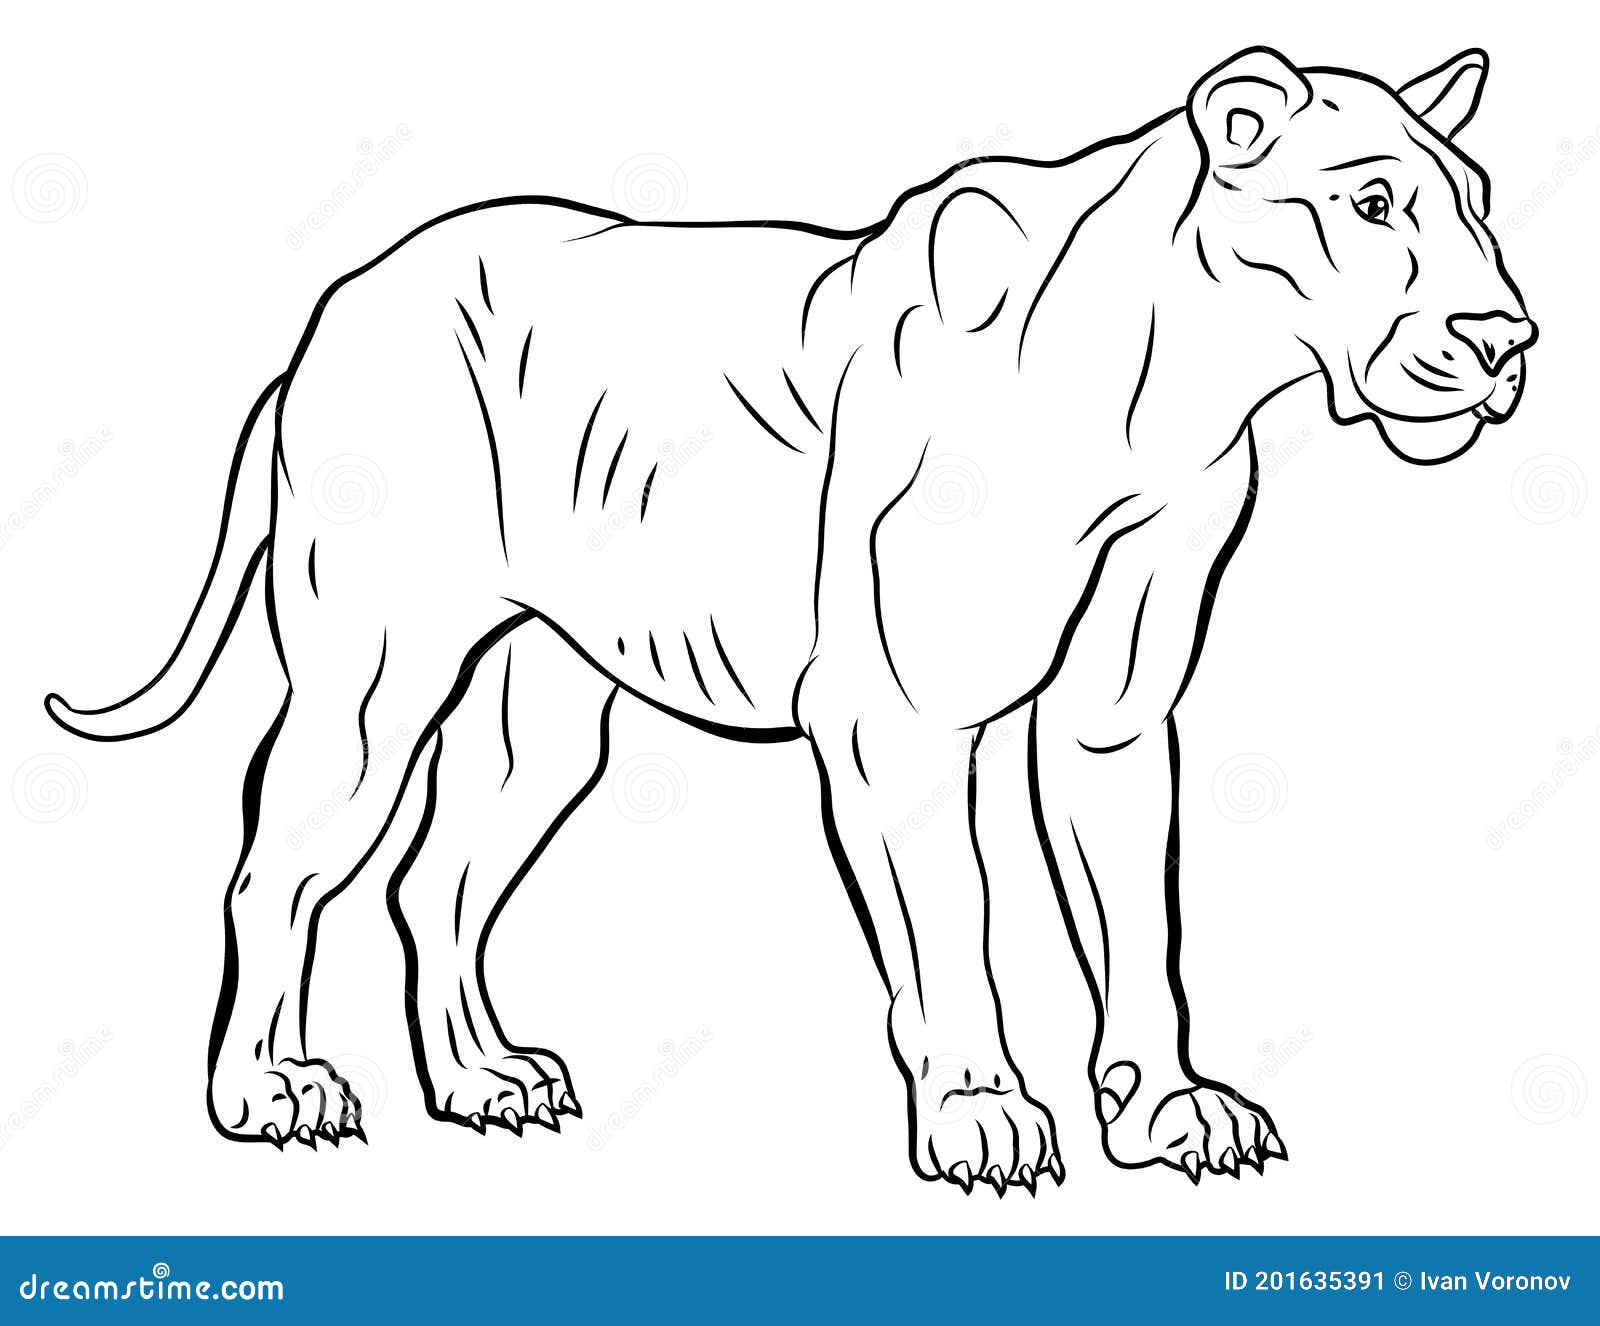 En El Mundo Animal. Imagen De Un Puma. Coloración De Dibujo En Blanco Y  Negro. Stock de ilustración - Ilustración de cubo, puma: 201635391